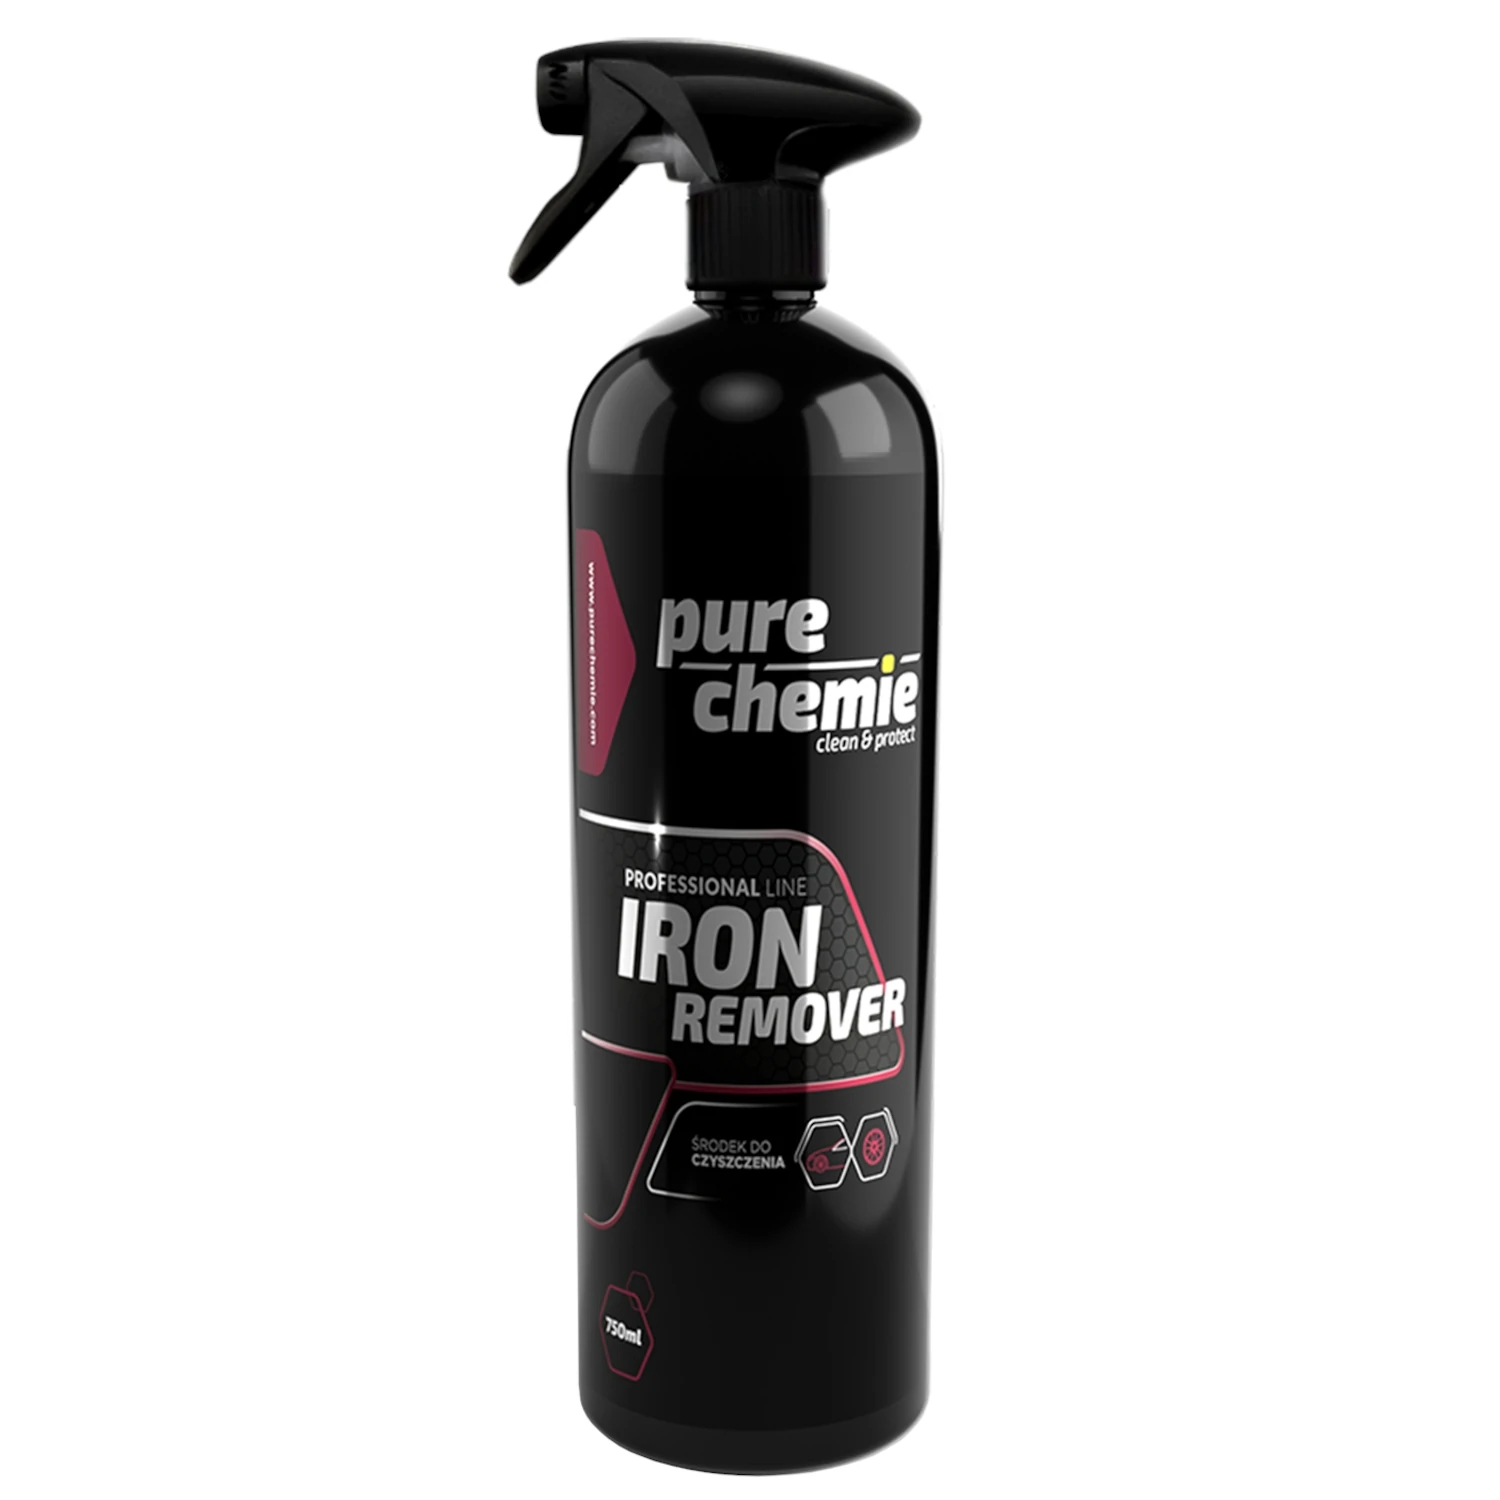 Image of Pure Chemie Iron Remover – usuwanie zanieczyszczeń metalicznych z karoserii i felg, deironizer 750ml